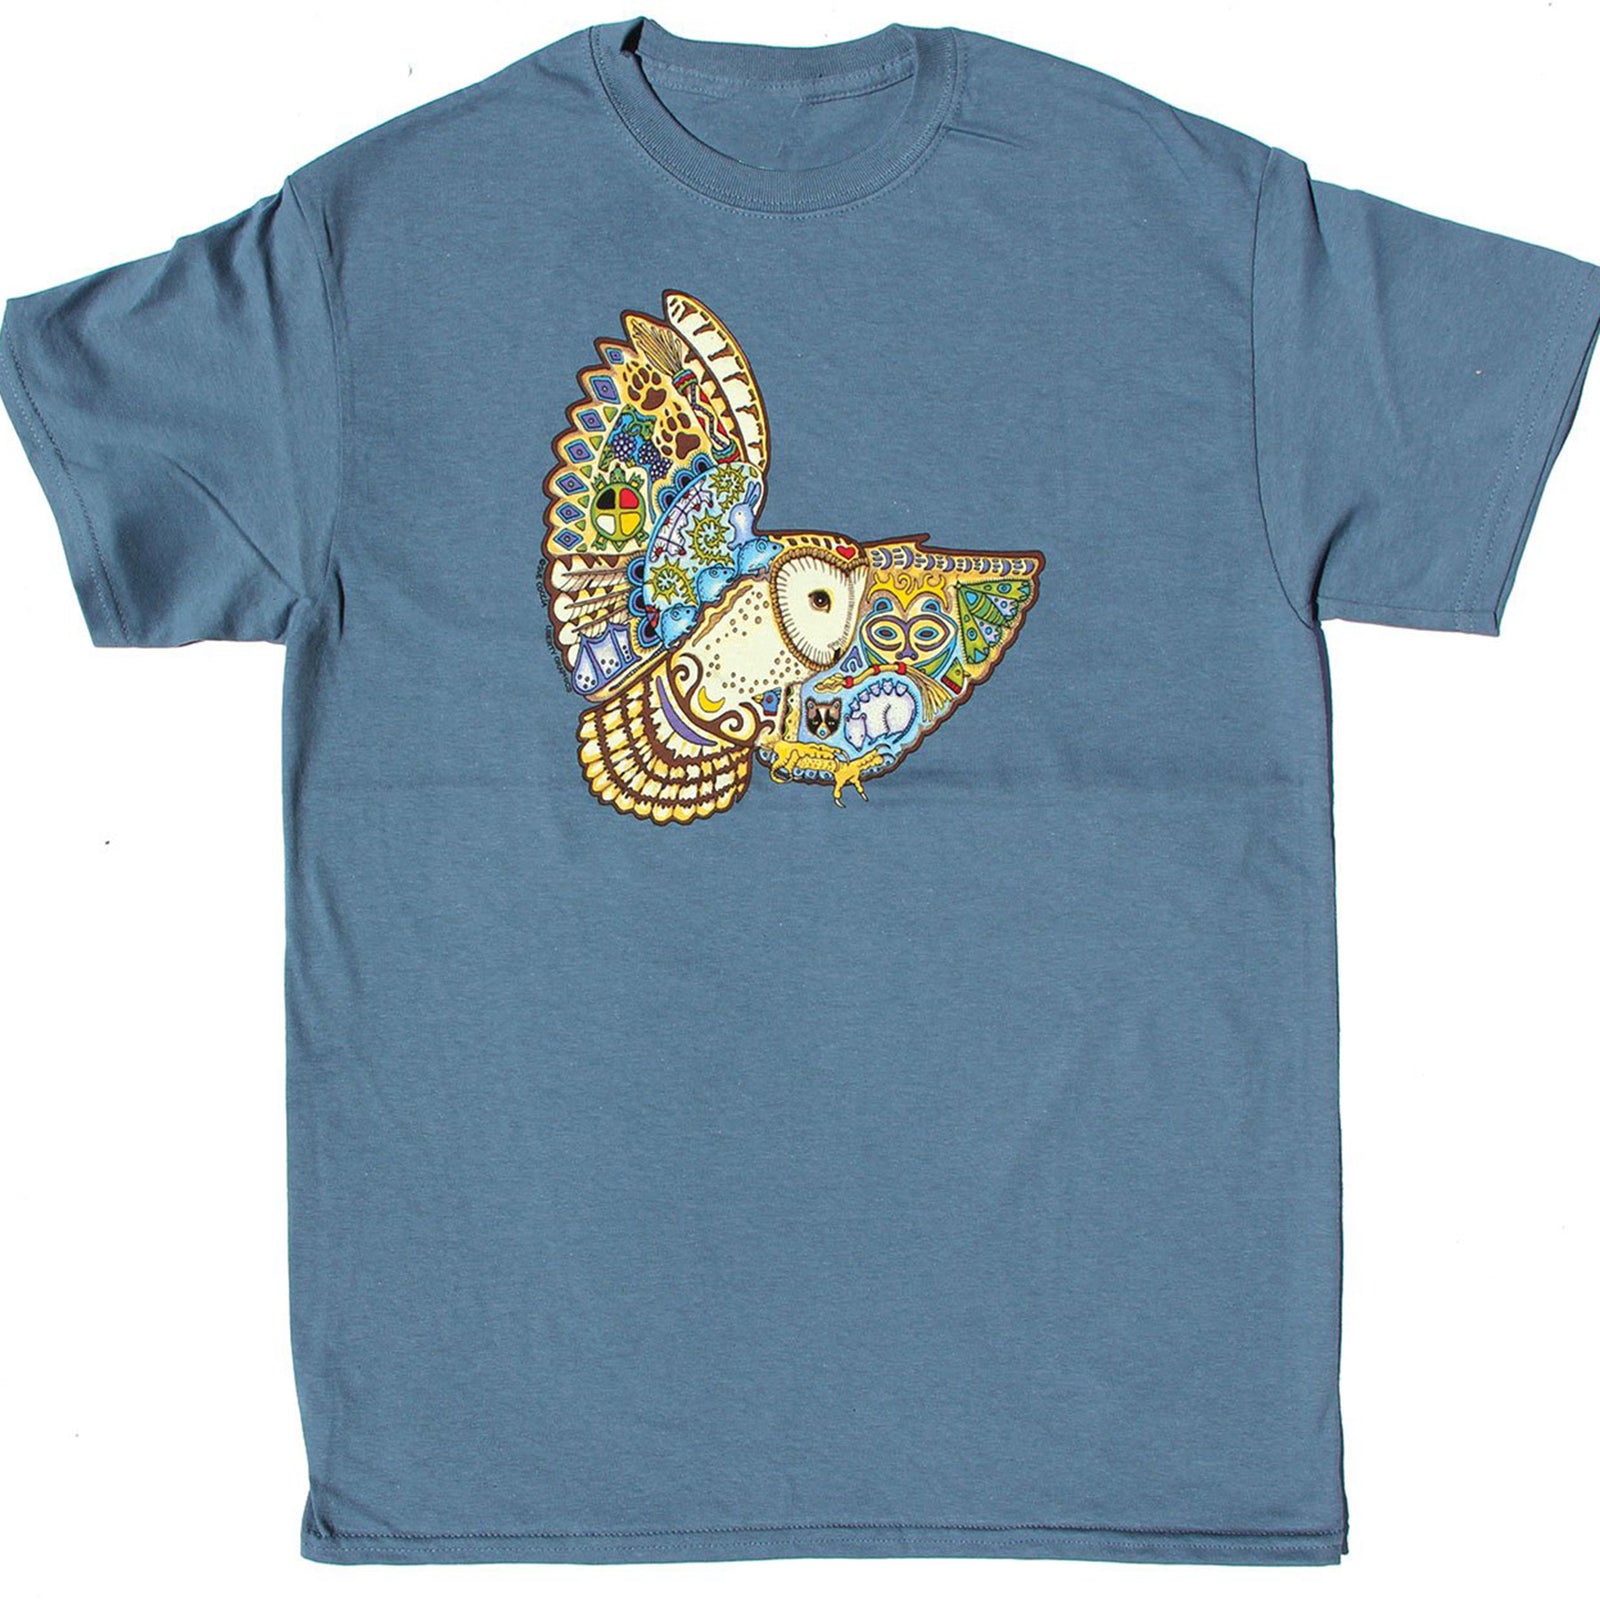 barn owl shirt in indigo